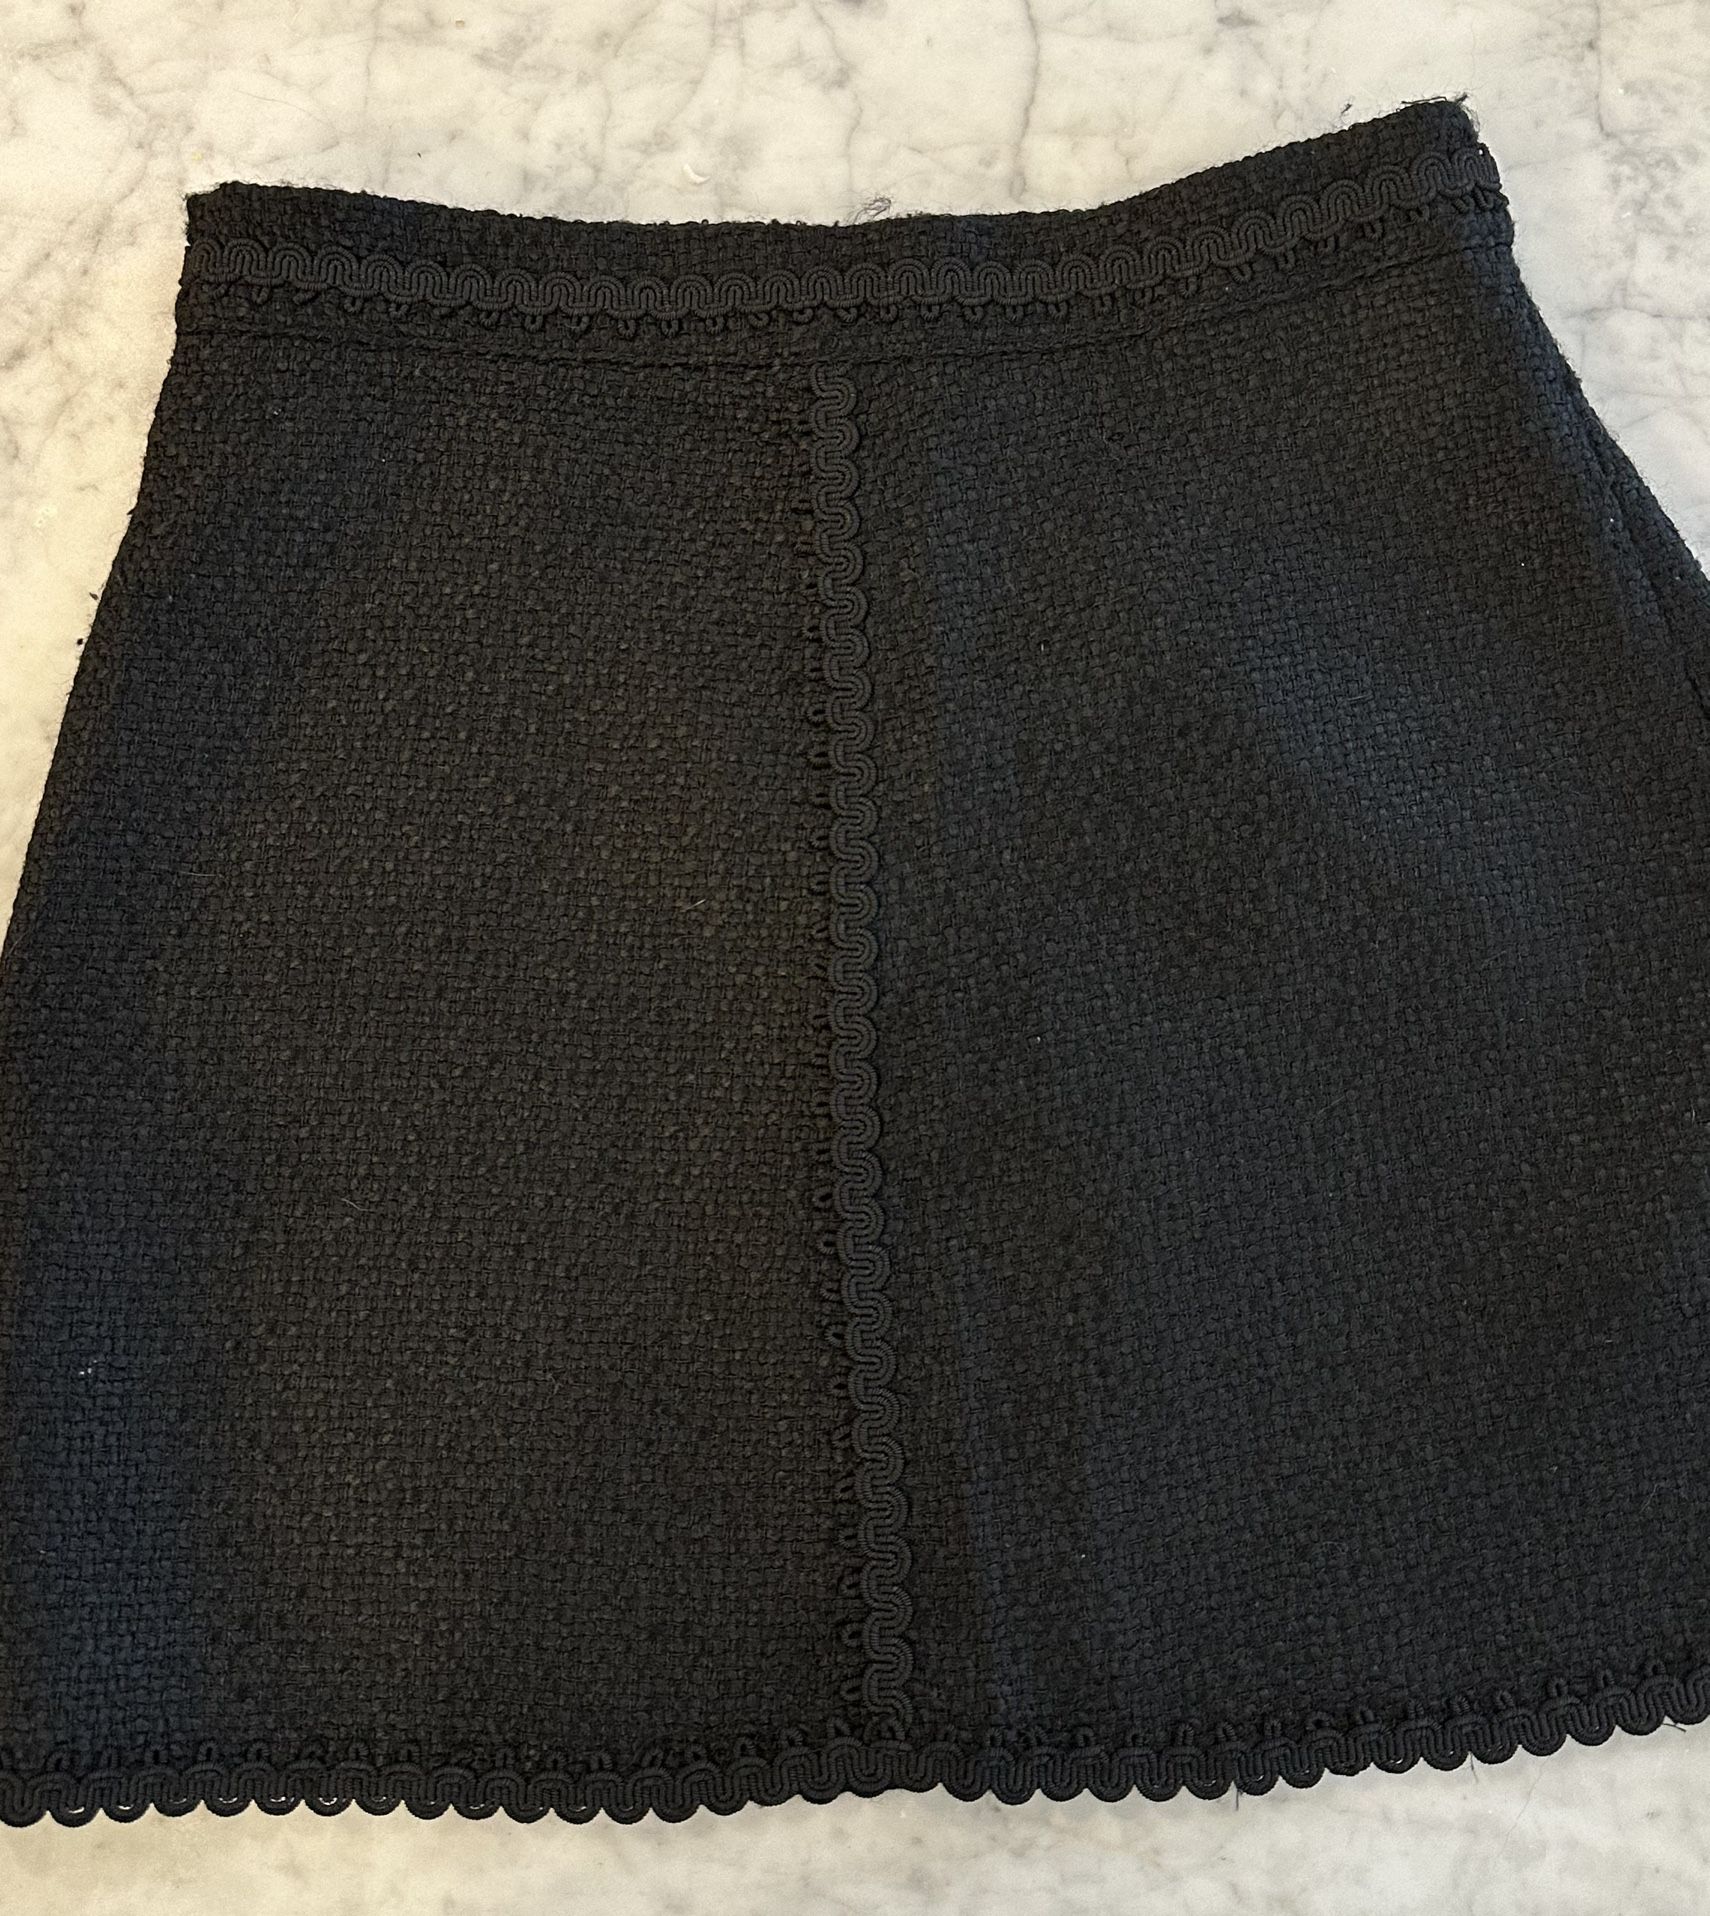 Zara Black Skirt